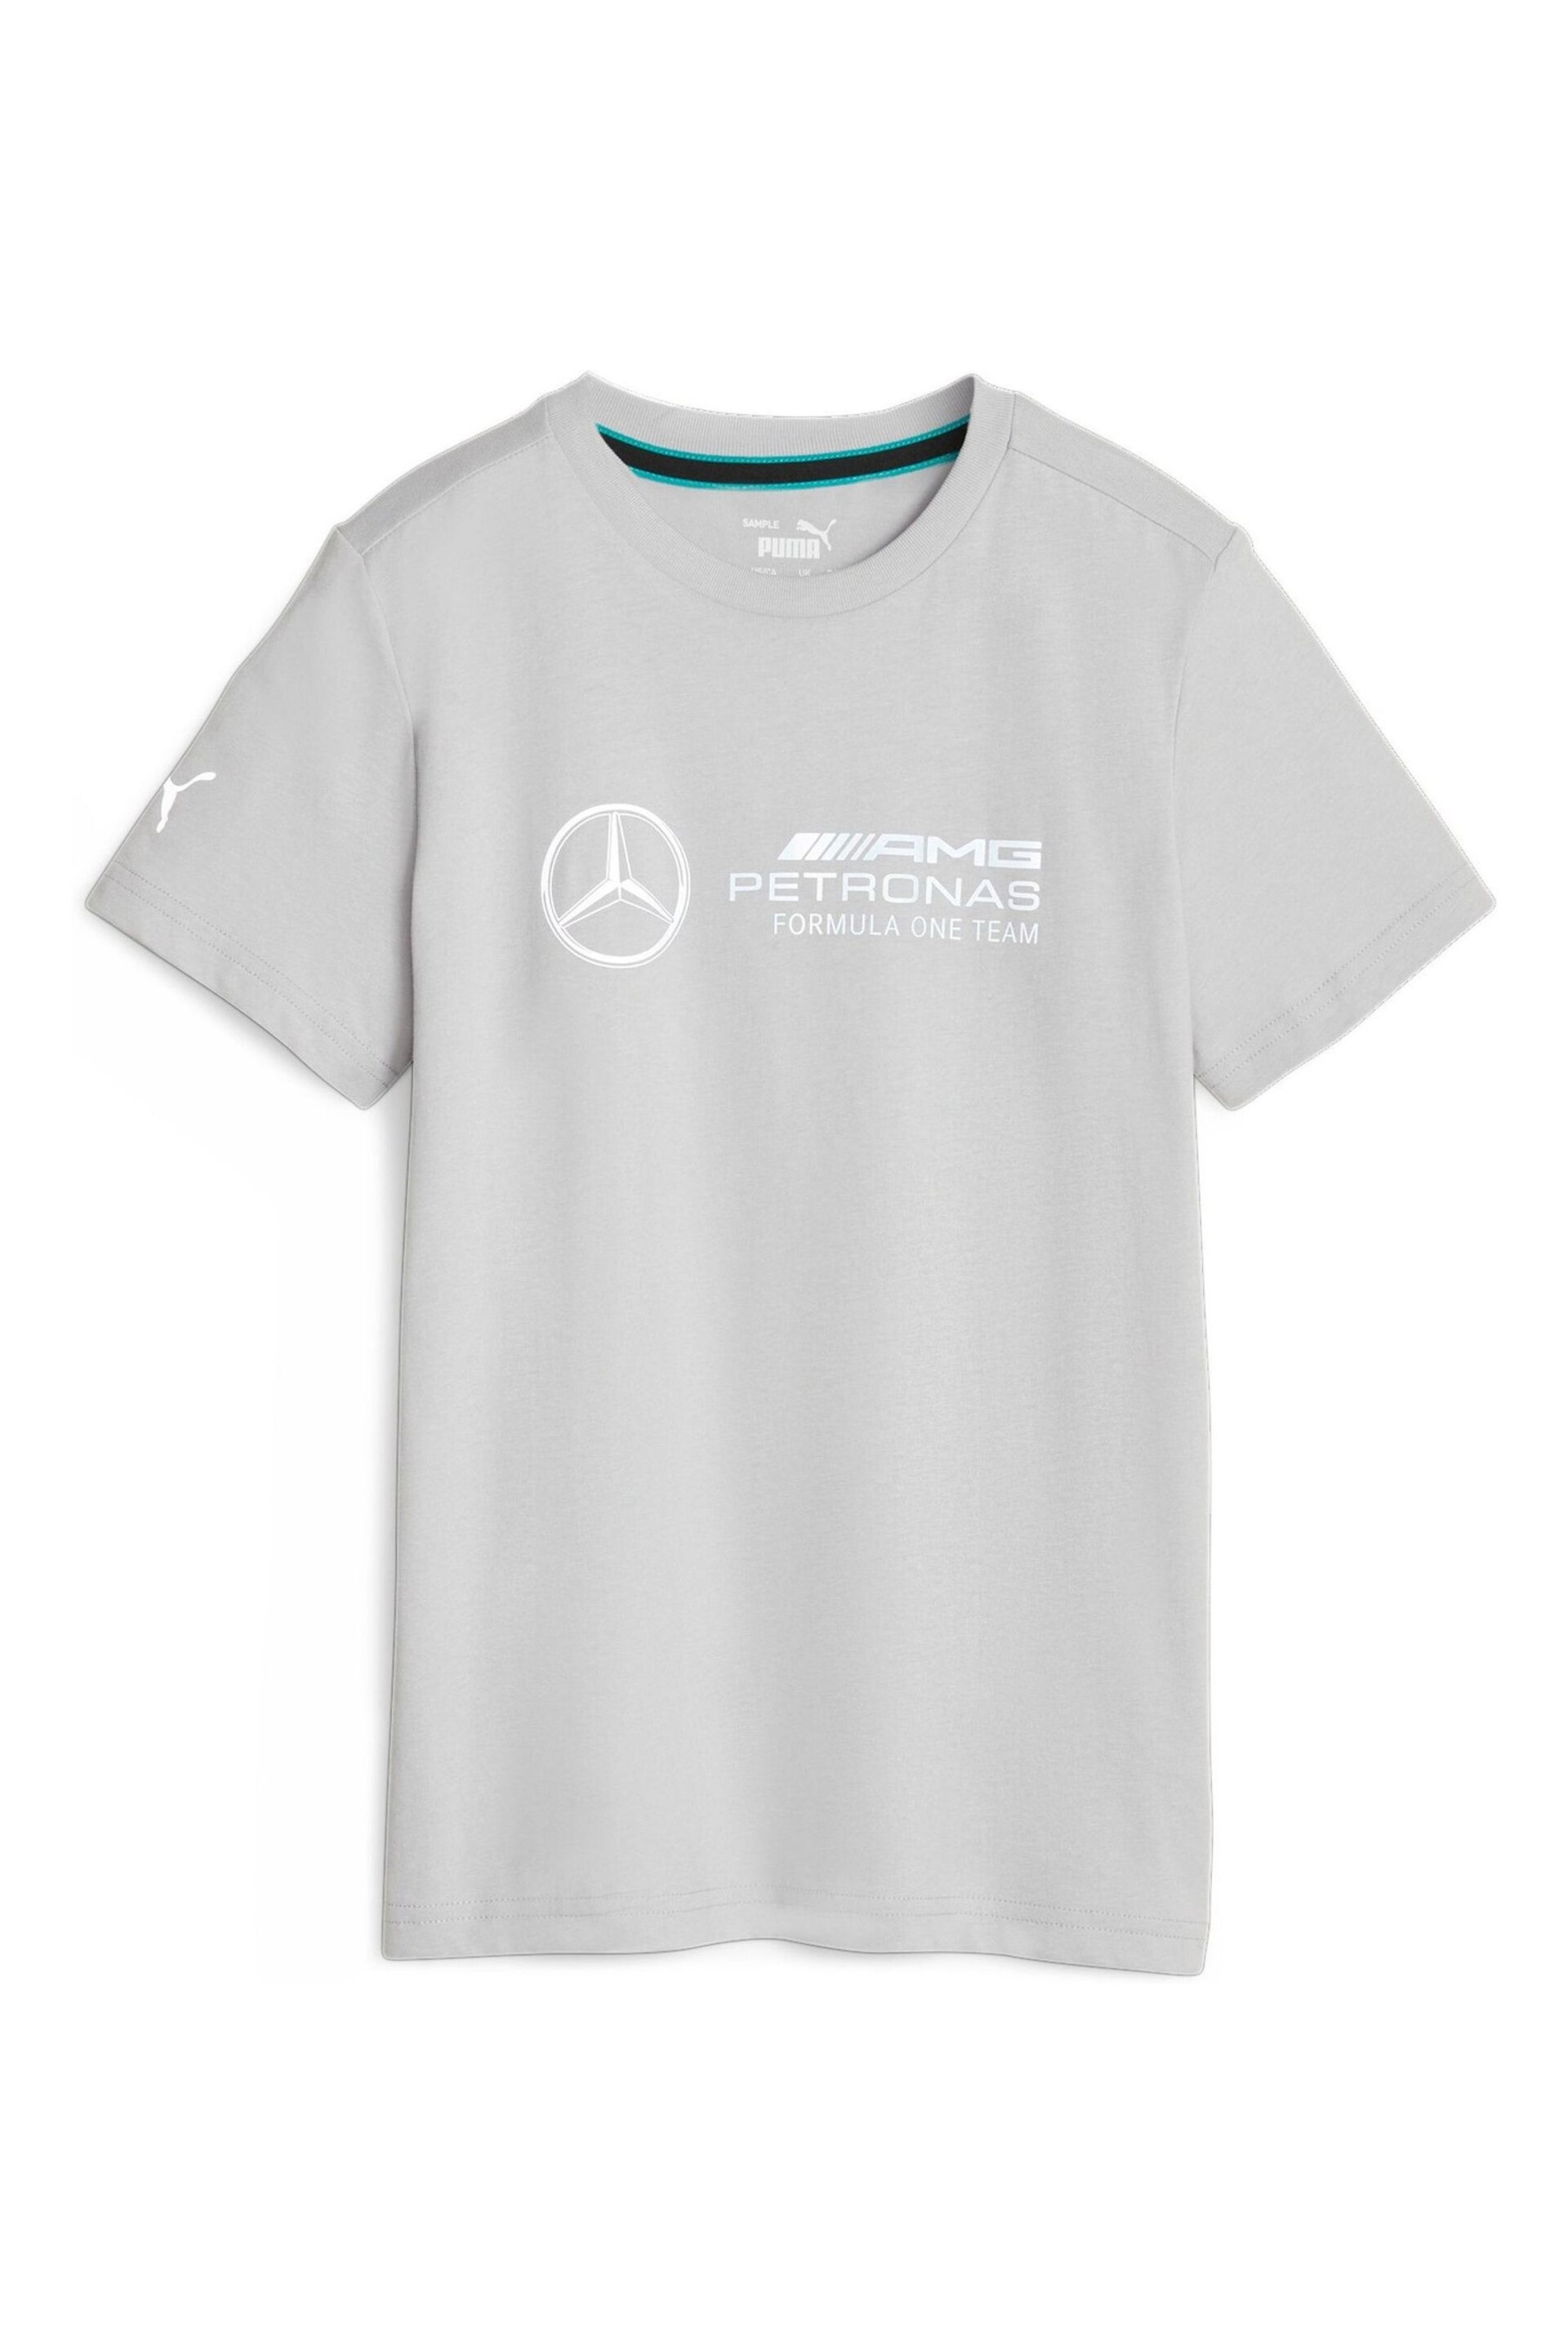 Puma Grey Mercedes-AMG Petronas Motorsport Youth Logo T-Shirt - Image 1 of 2